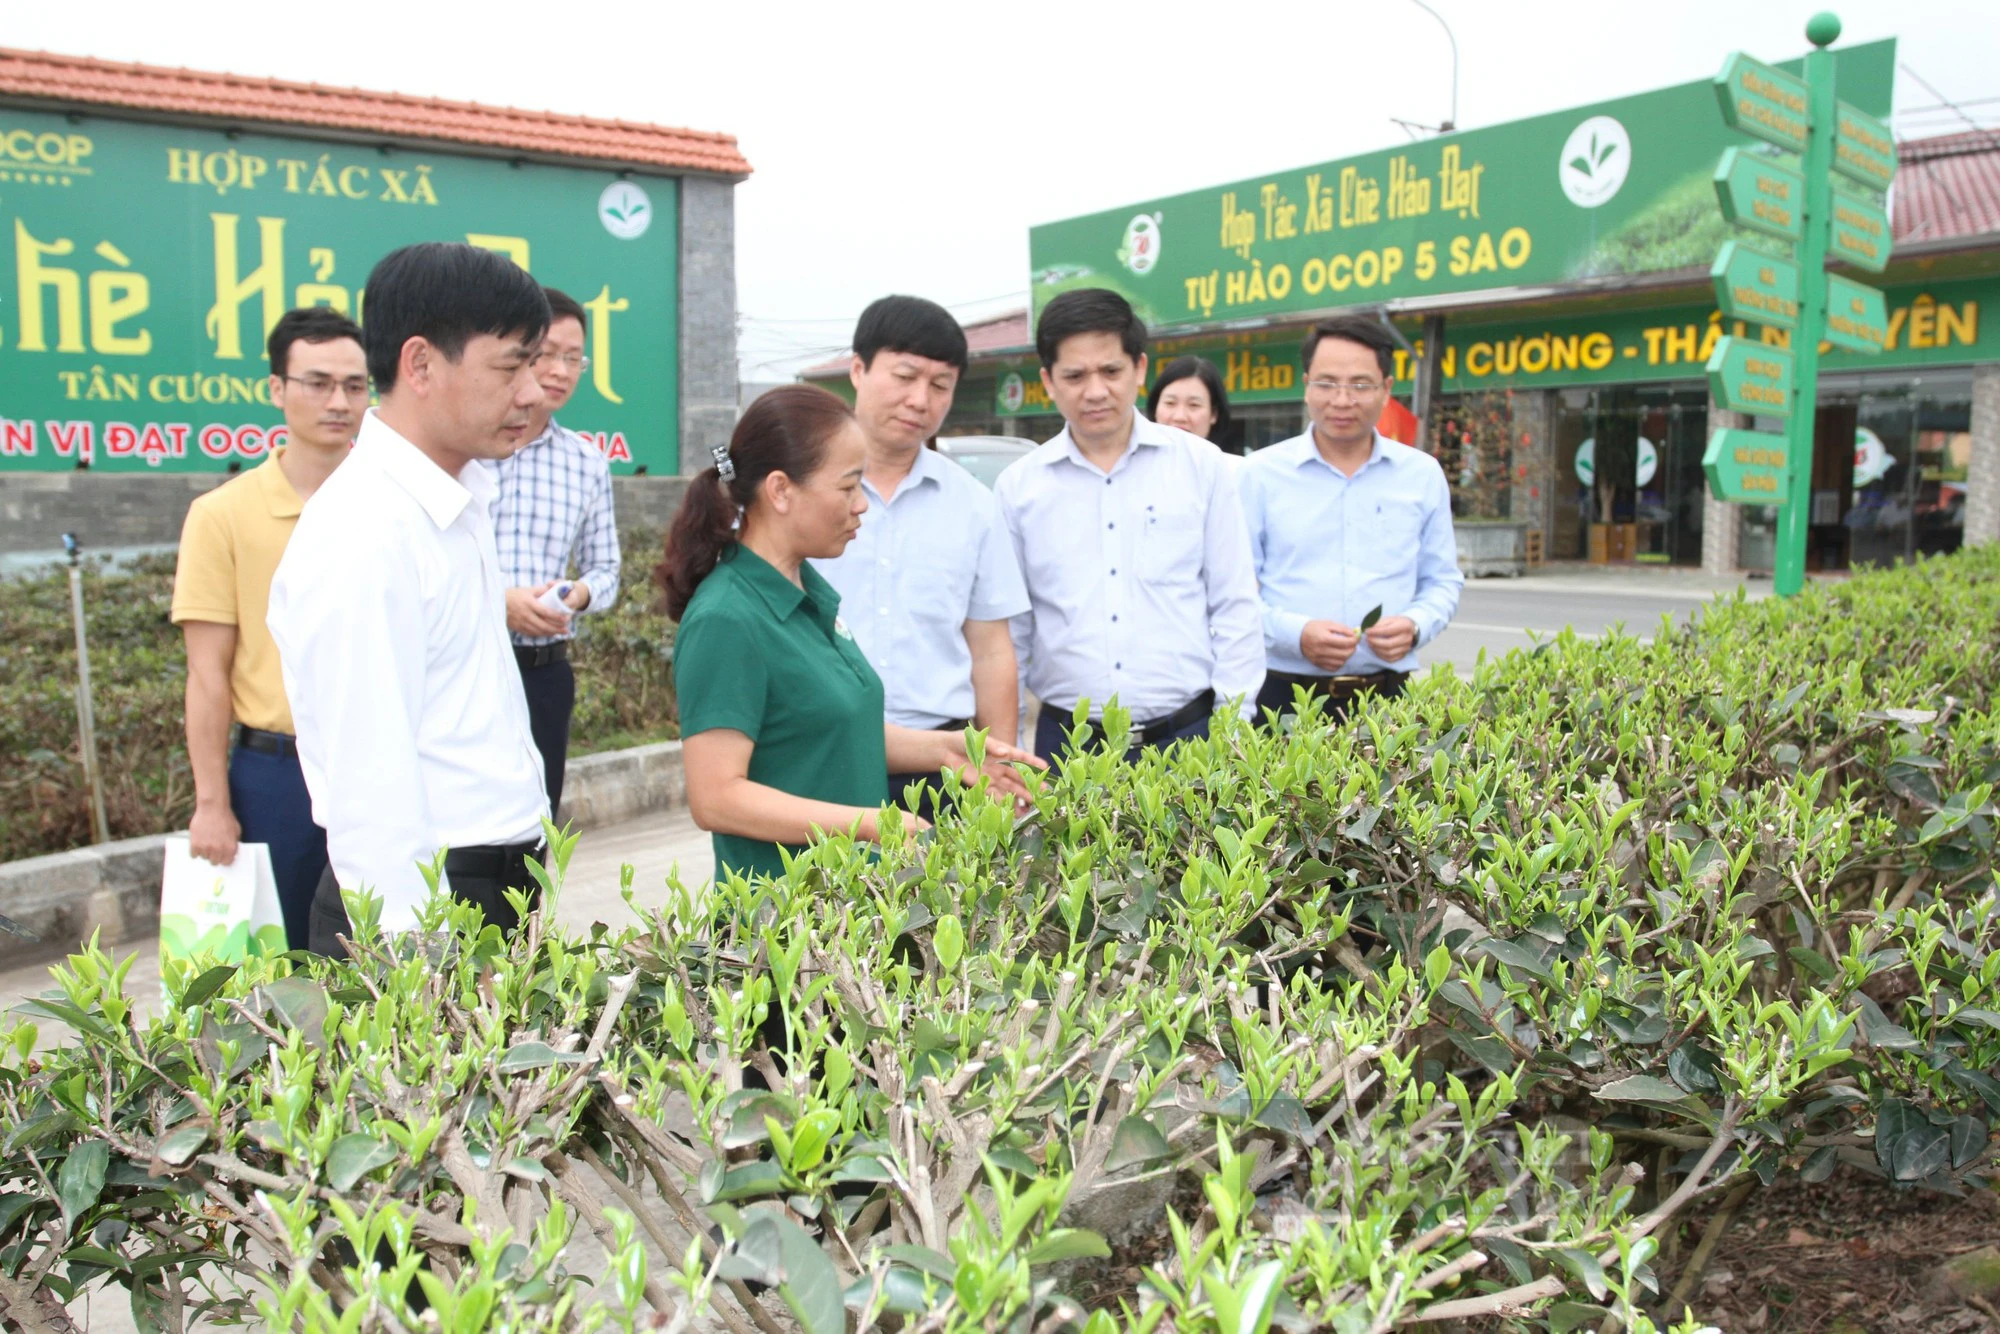 Chuyển đổi số hiệu quả, nông dân Thái Nguyên chăn nuôi trang trại nhàn, đưa đặc sản chè Thái Nguyên đi muôn nơi- Ảnh 2.